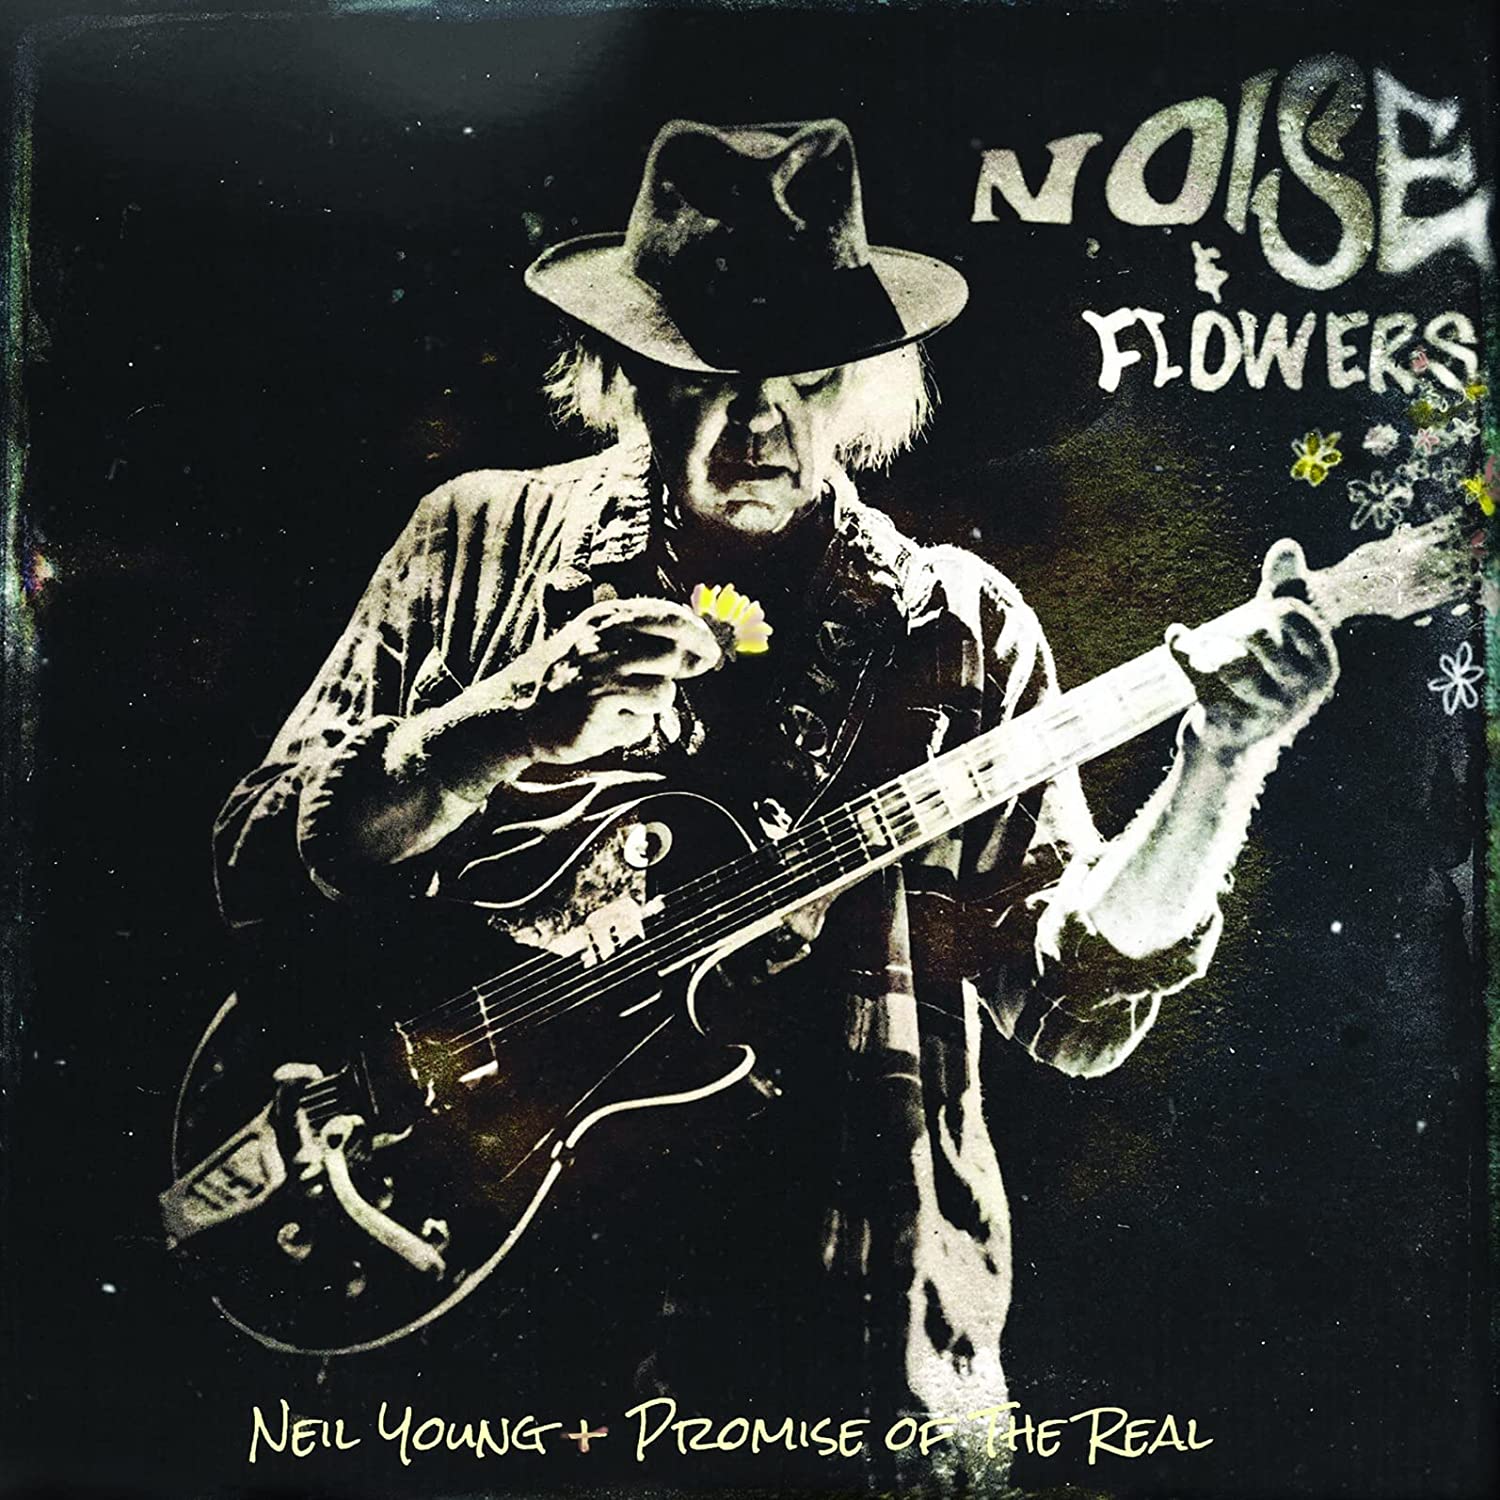 Neil Young - Noise & Flowers (Vinyl 2LP)